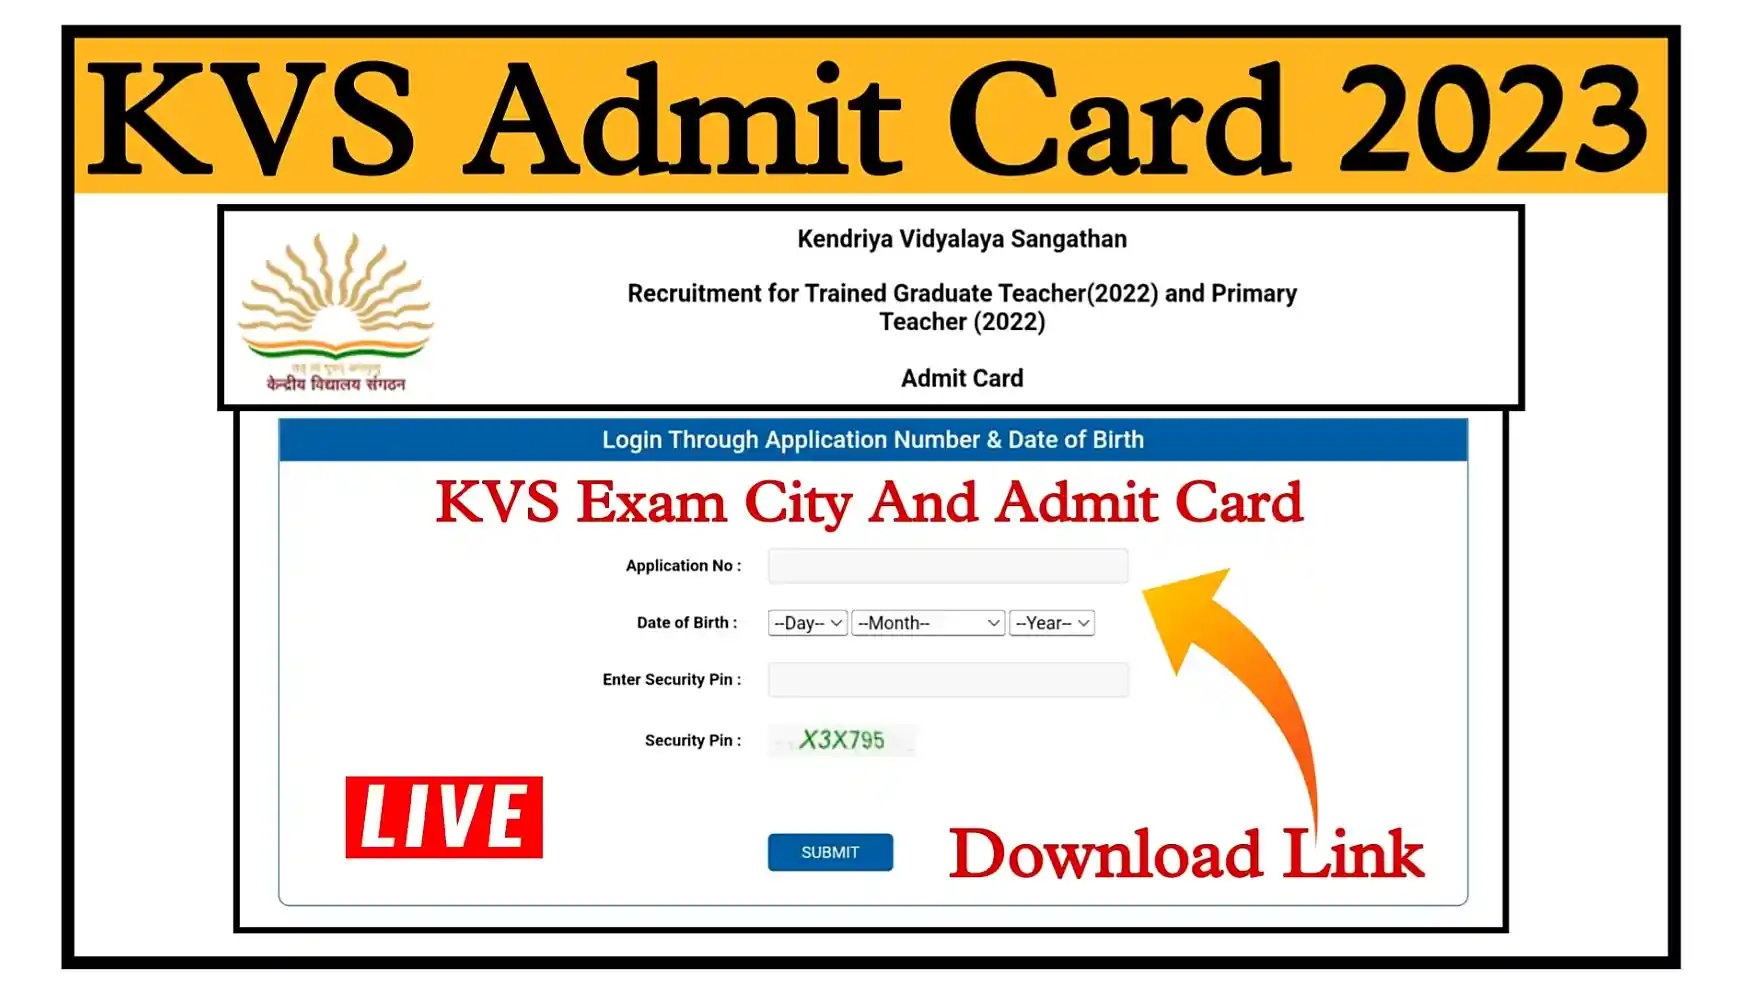 KVS Admit Card 2023 Download Link केंद्रीय विद्यालय संगठन भर्ती की Exam City और Admit Card यहां से डाउनलोड करें